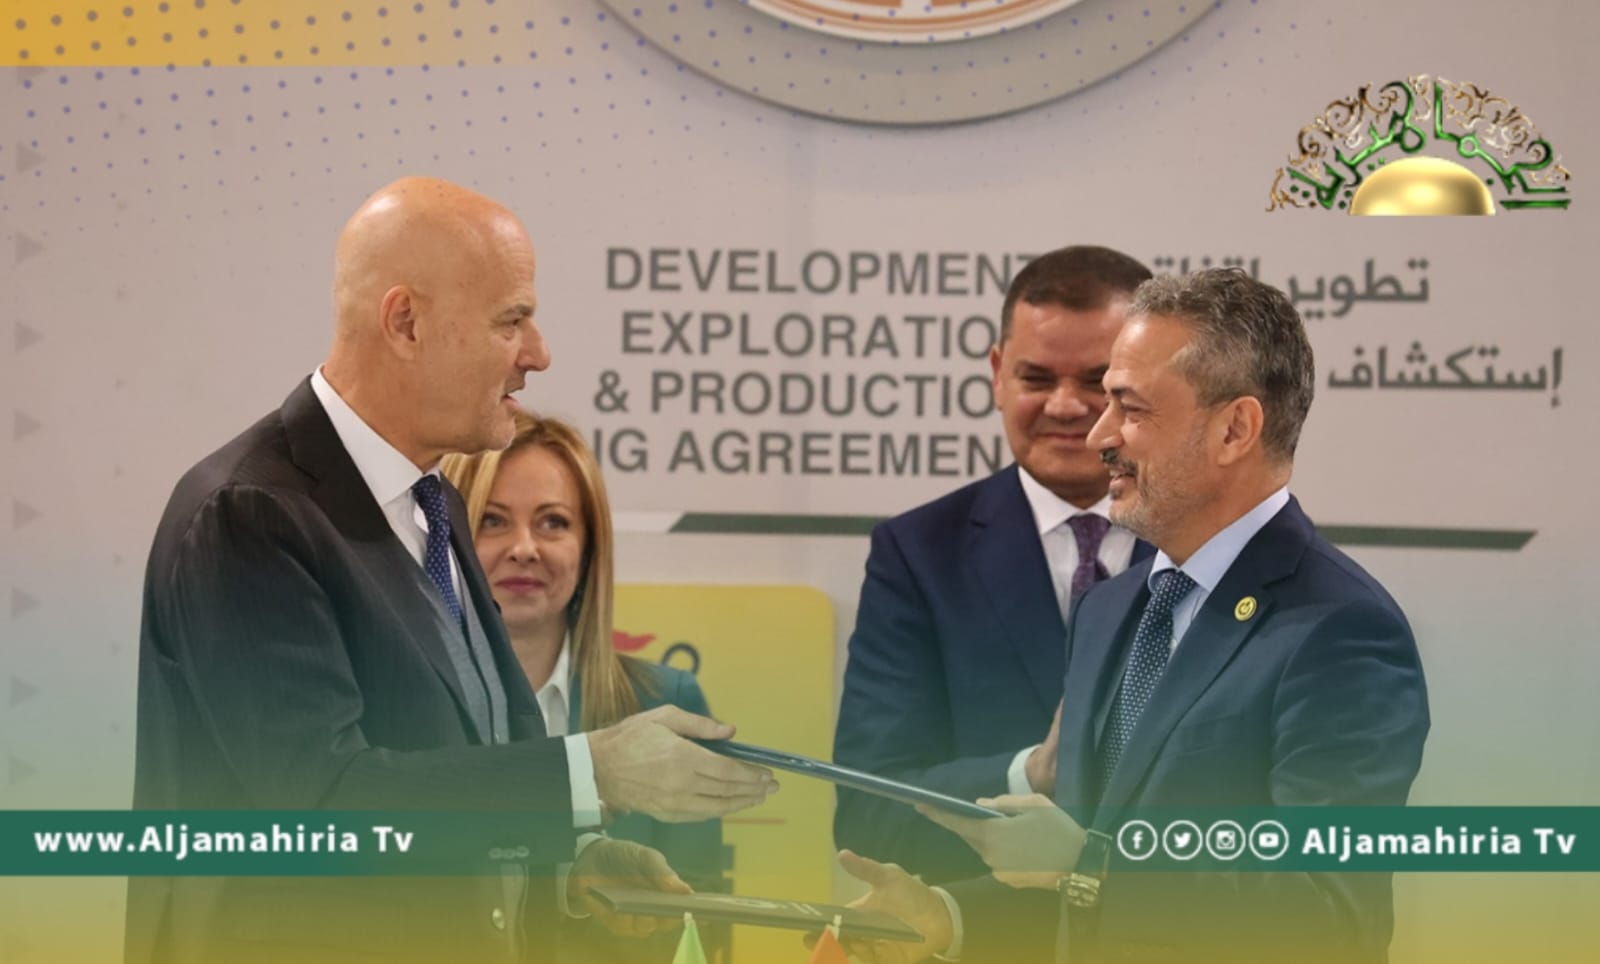 مؤسسة النفط تعلن التوقيع الرسمي على تطوير اتفاقية مع إيني الإيطالية